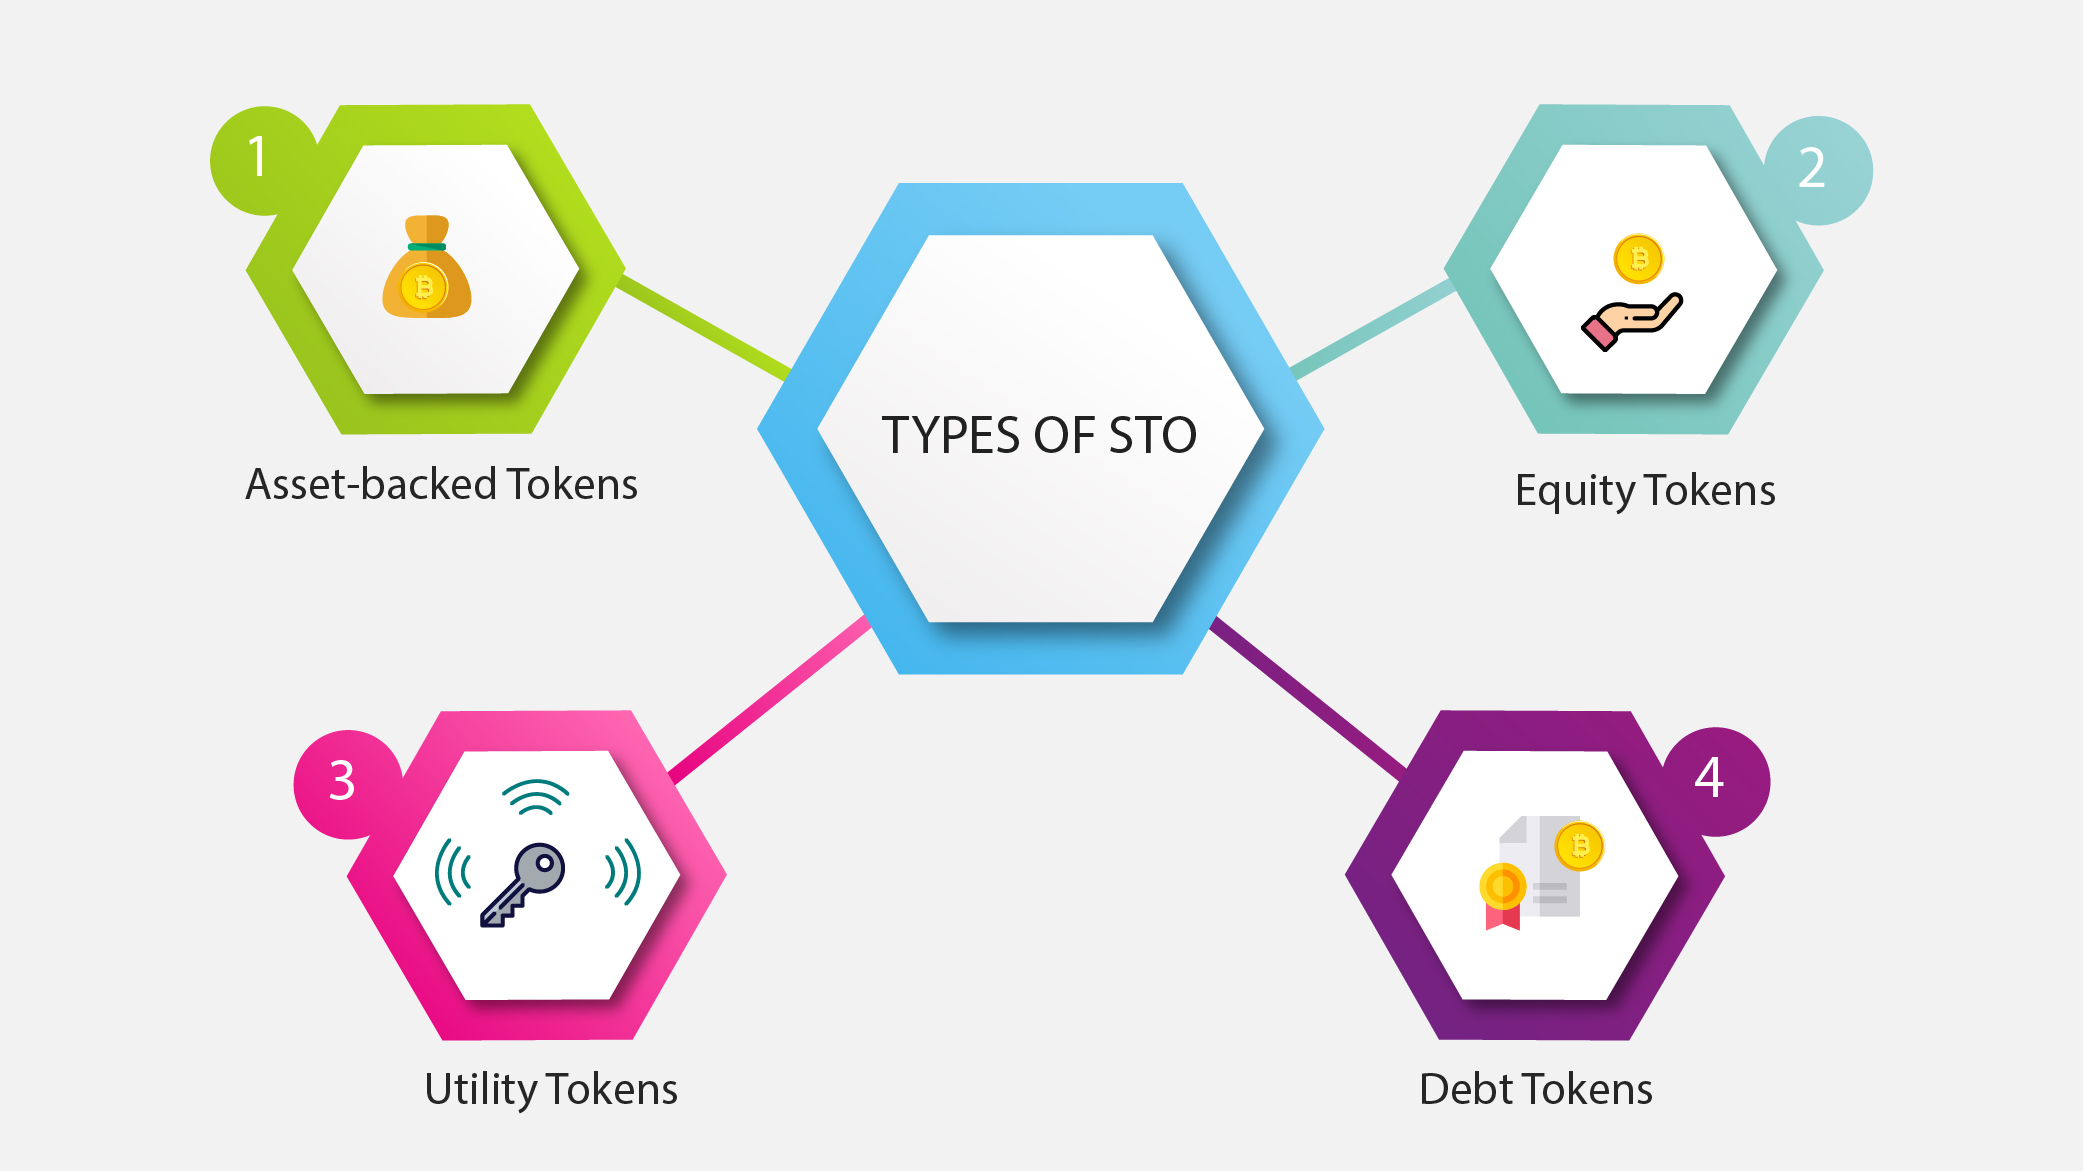 Types of STO